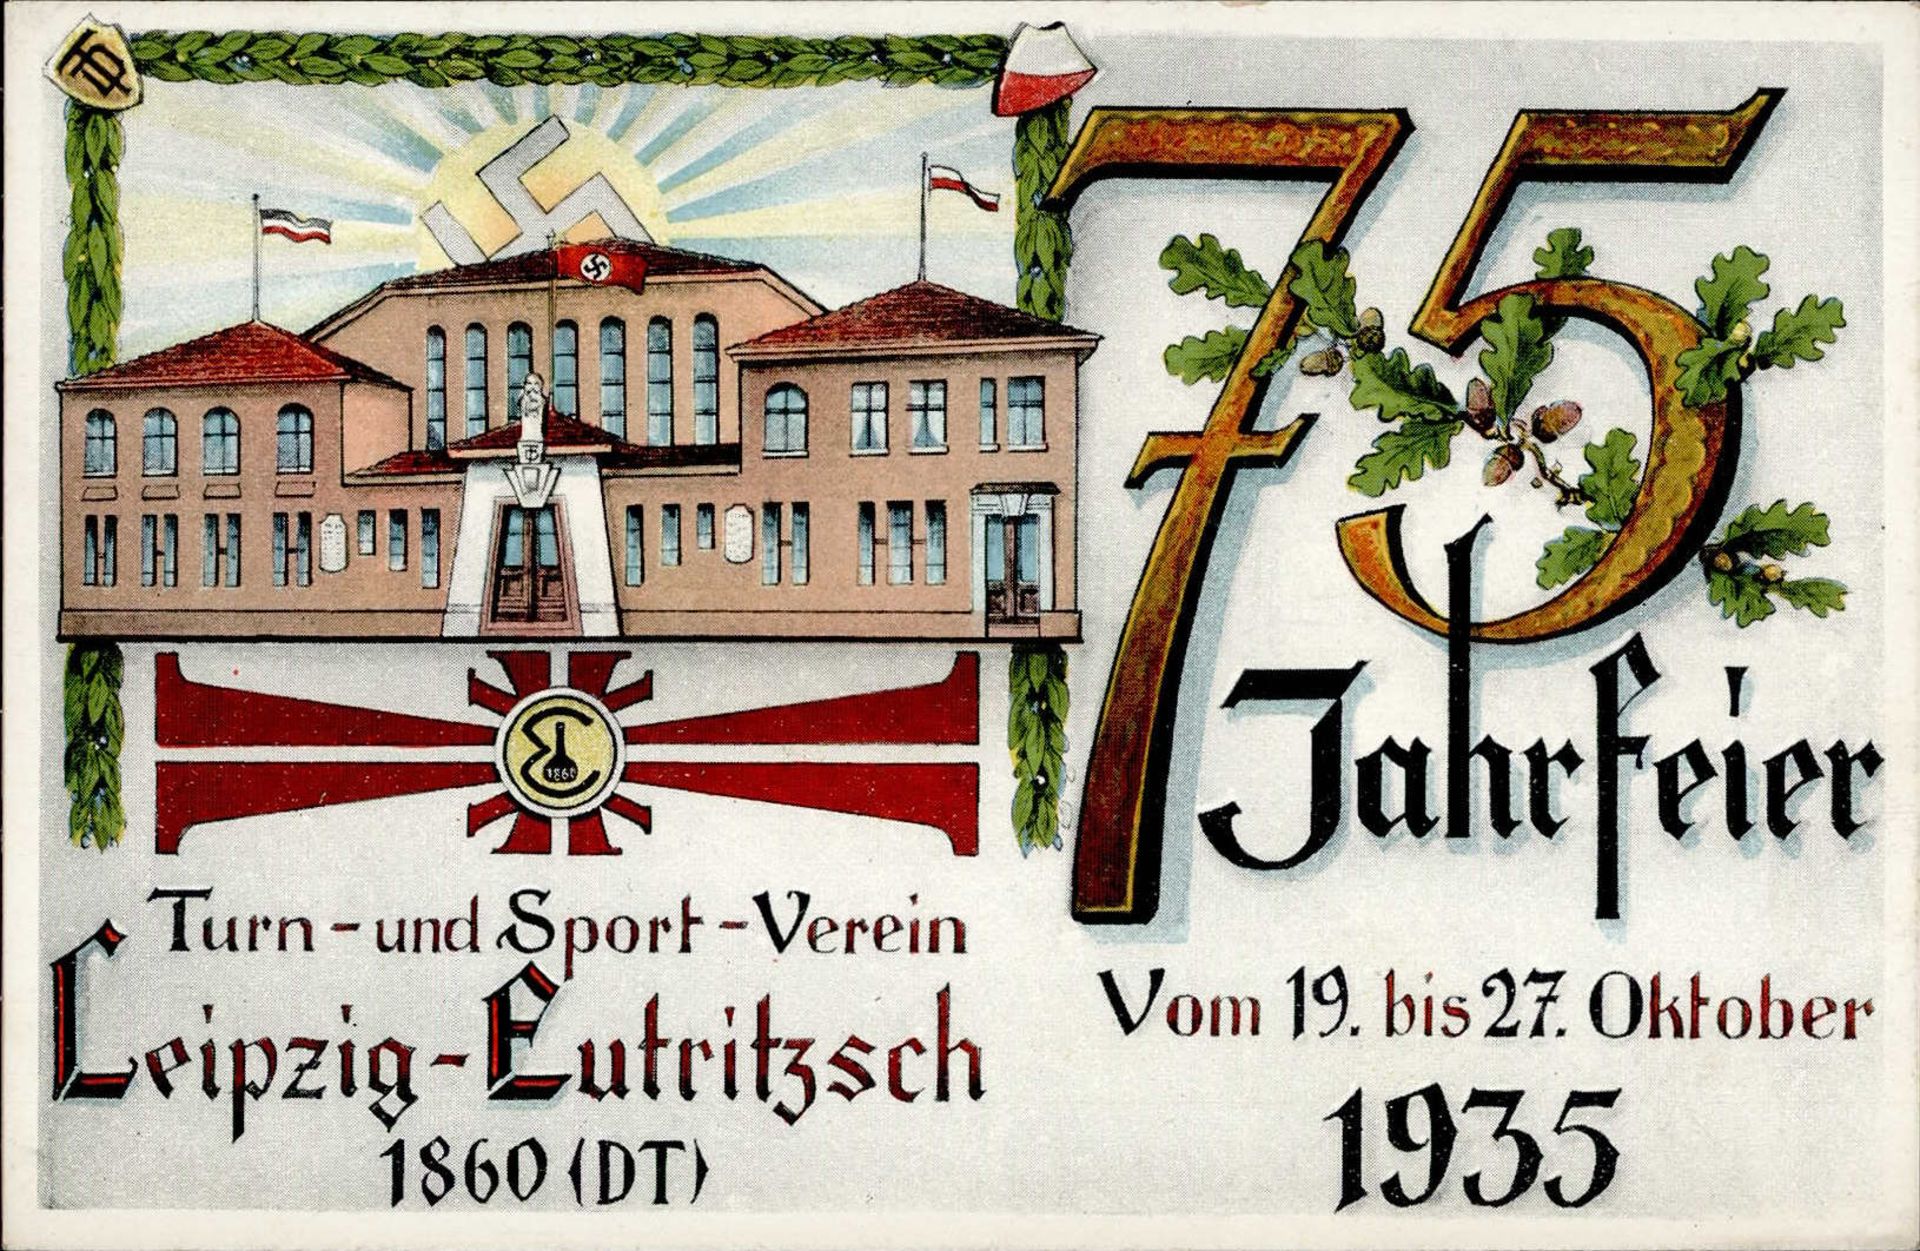 Sport Leipzig-Eutritzsch 75.Jahrfeier des Turn u. Sport-Verein 1935